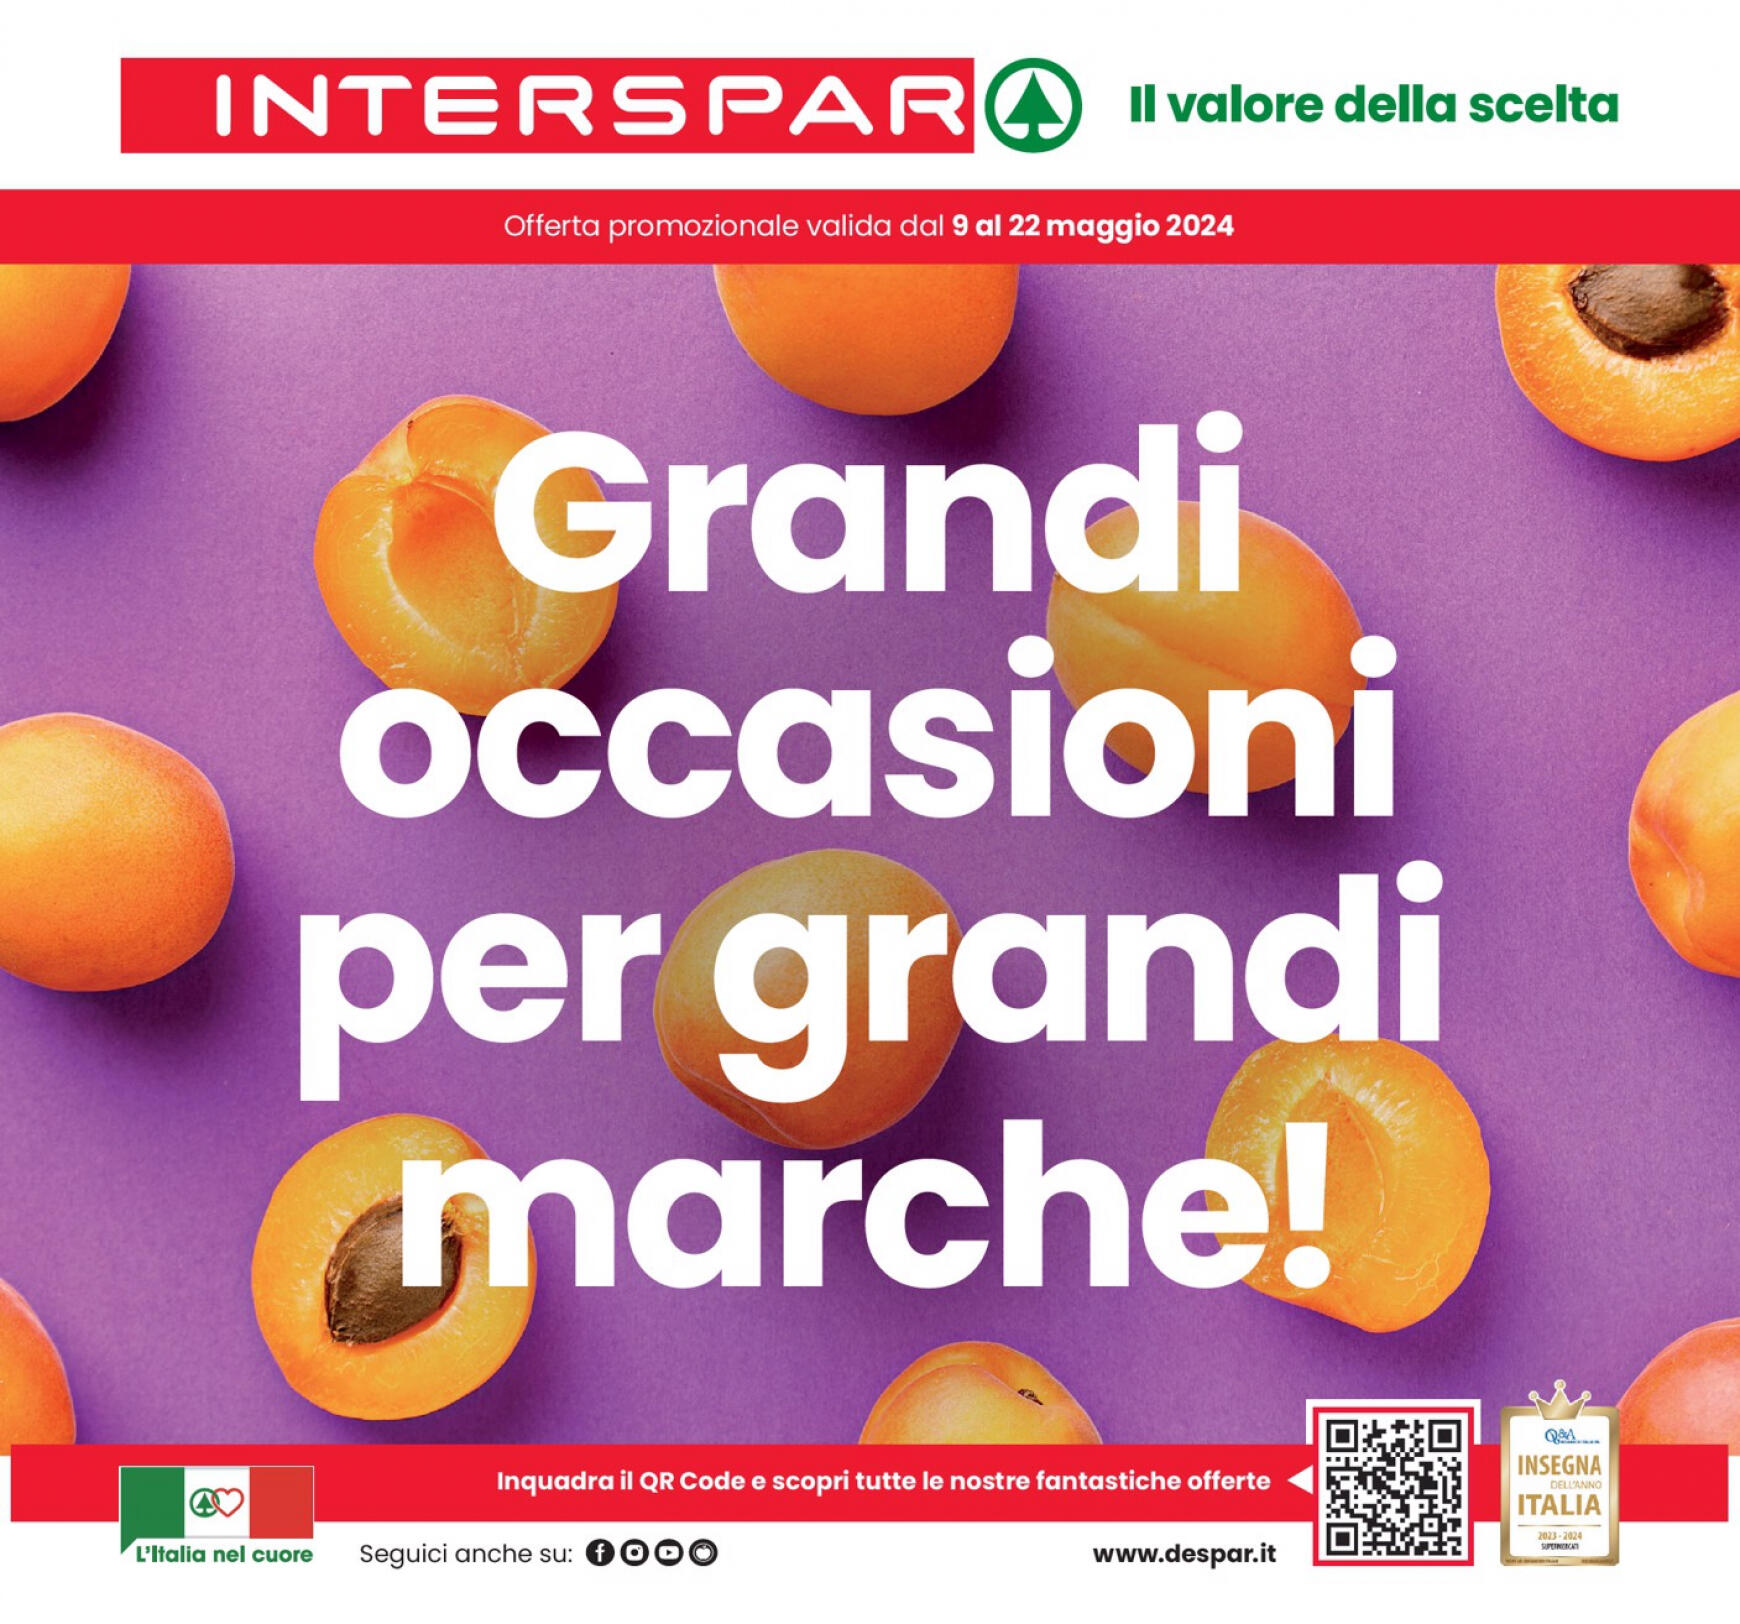 interspar - Nuovo volantino INTERSPAR - Fioriscono occasioni per grandi marche! 09.05. - 22.05.